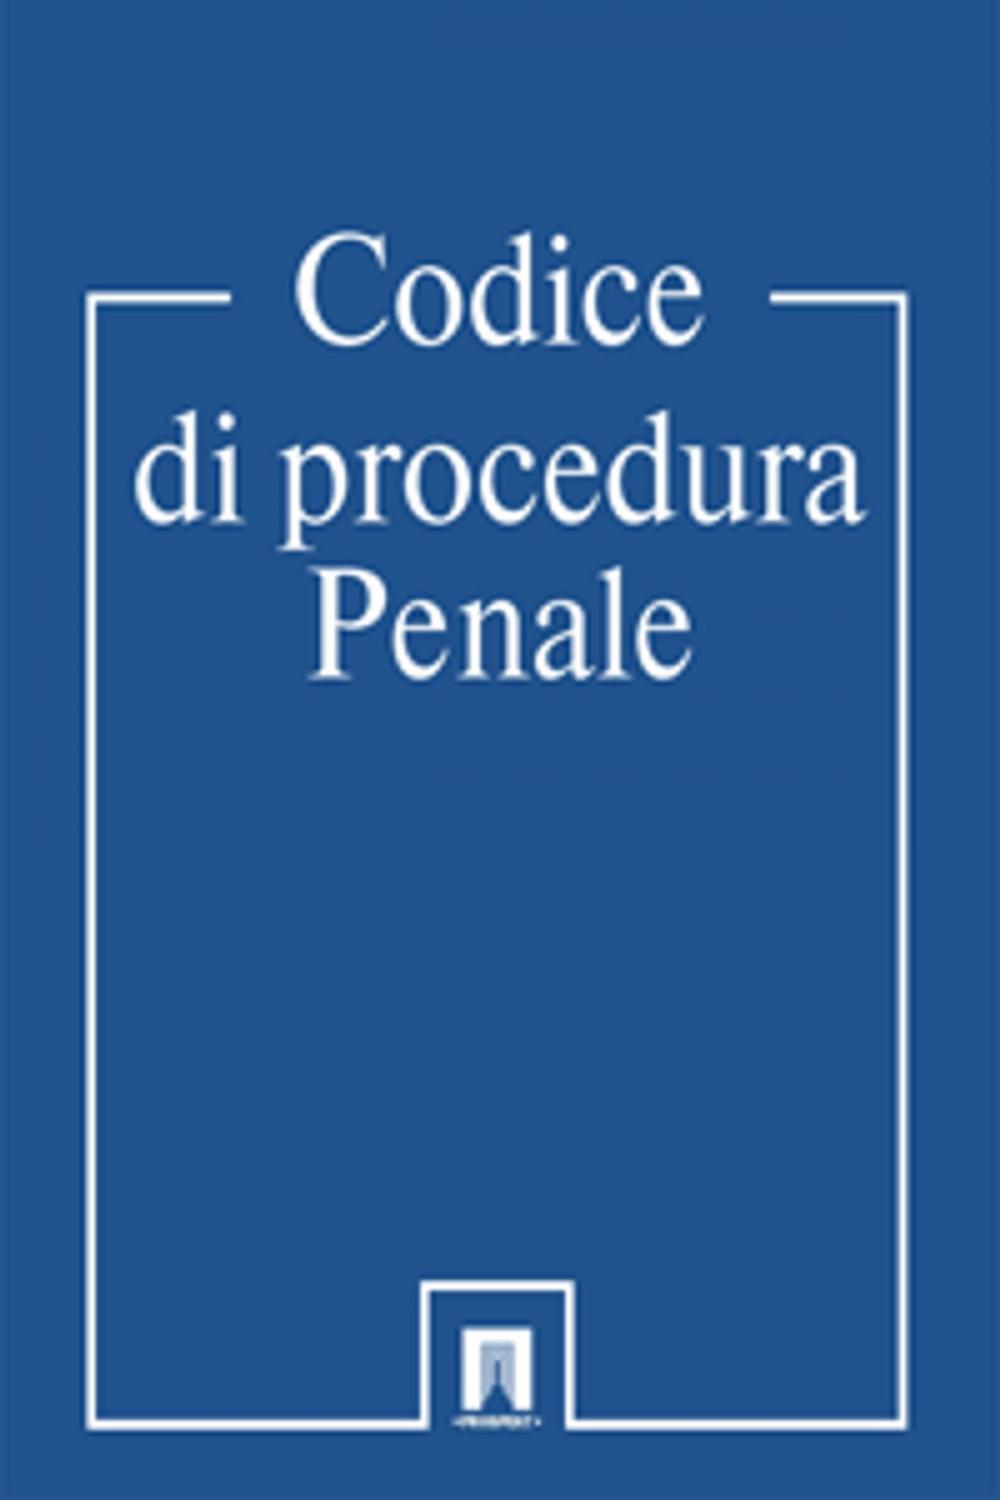 Big bigCover of Codice di procedura Penale